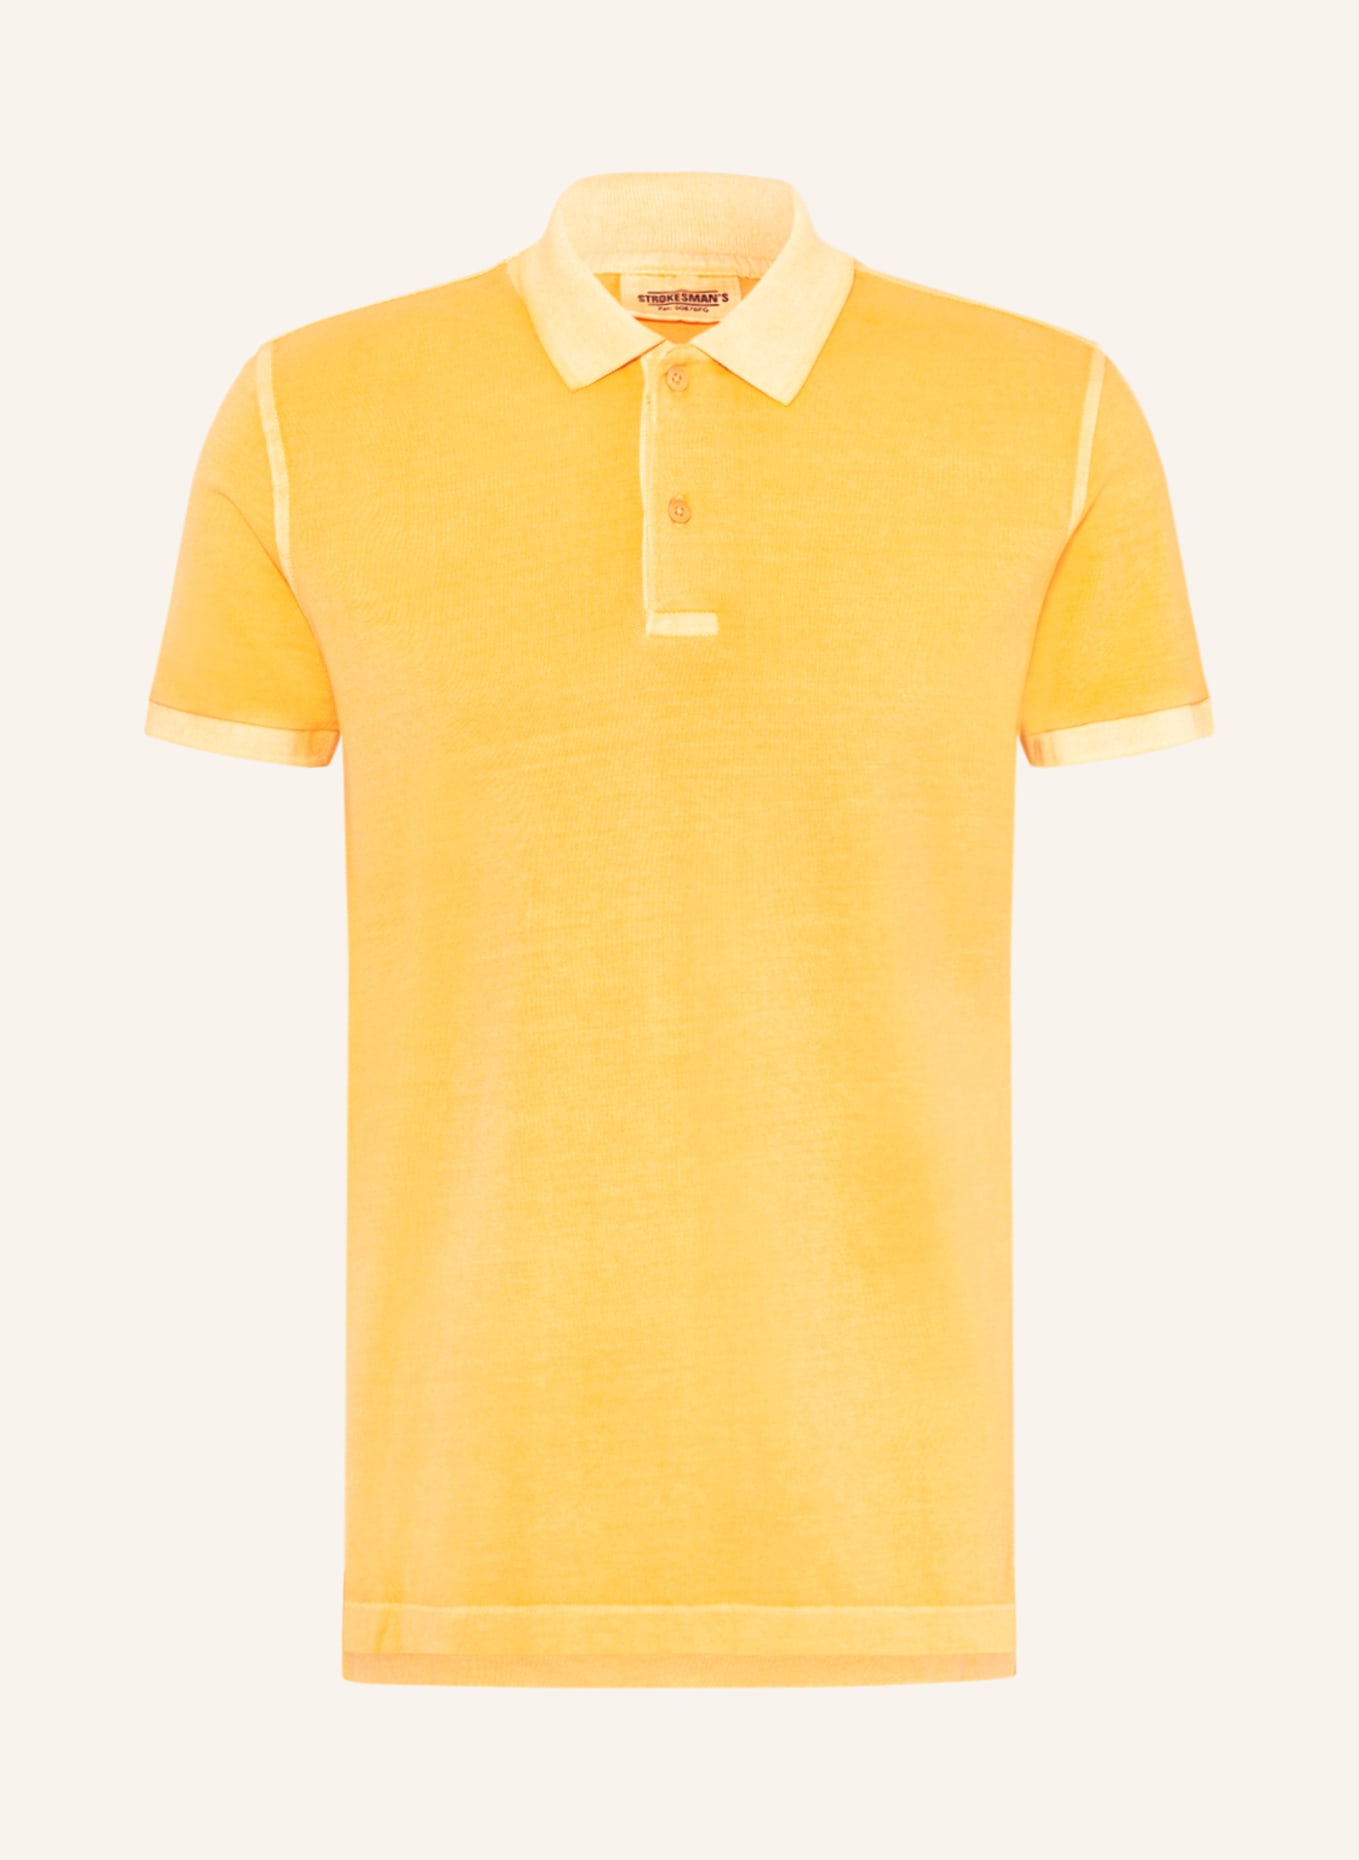 STROKESMAN'S Piqué-Poloshirt, Farbe: GELB (Bild 1)